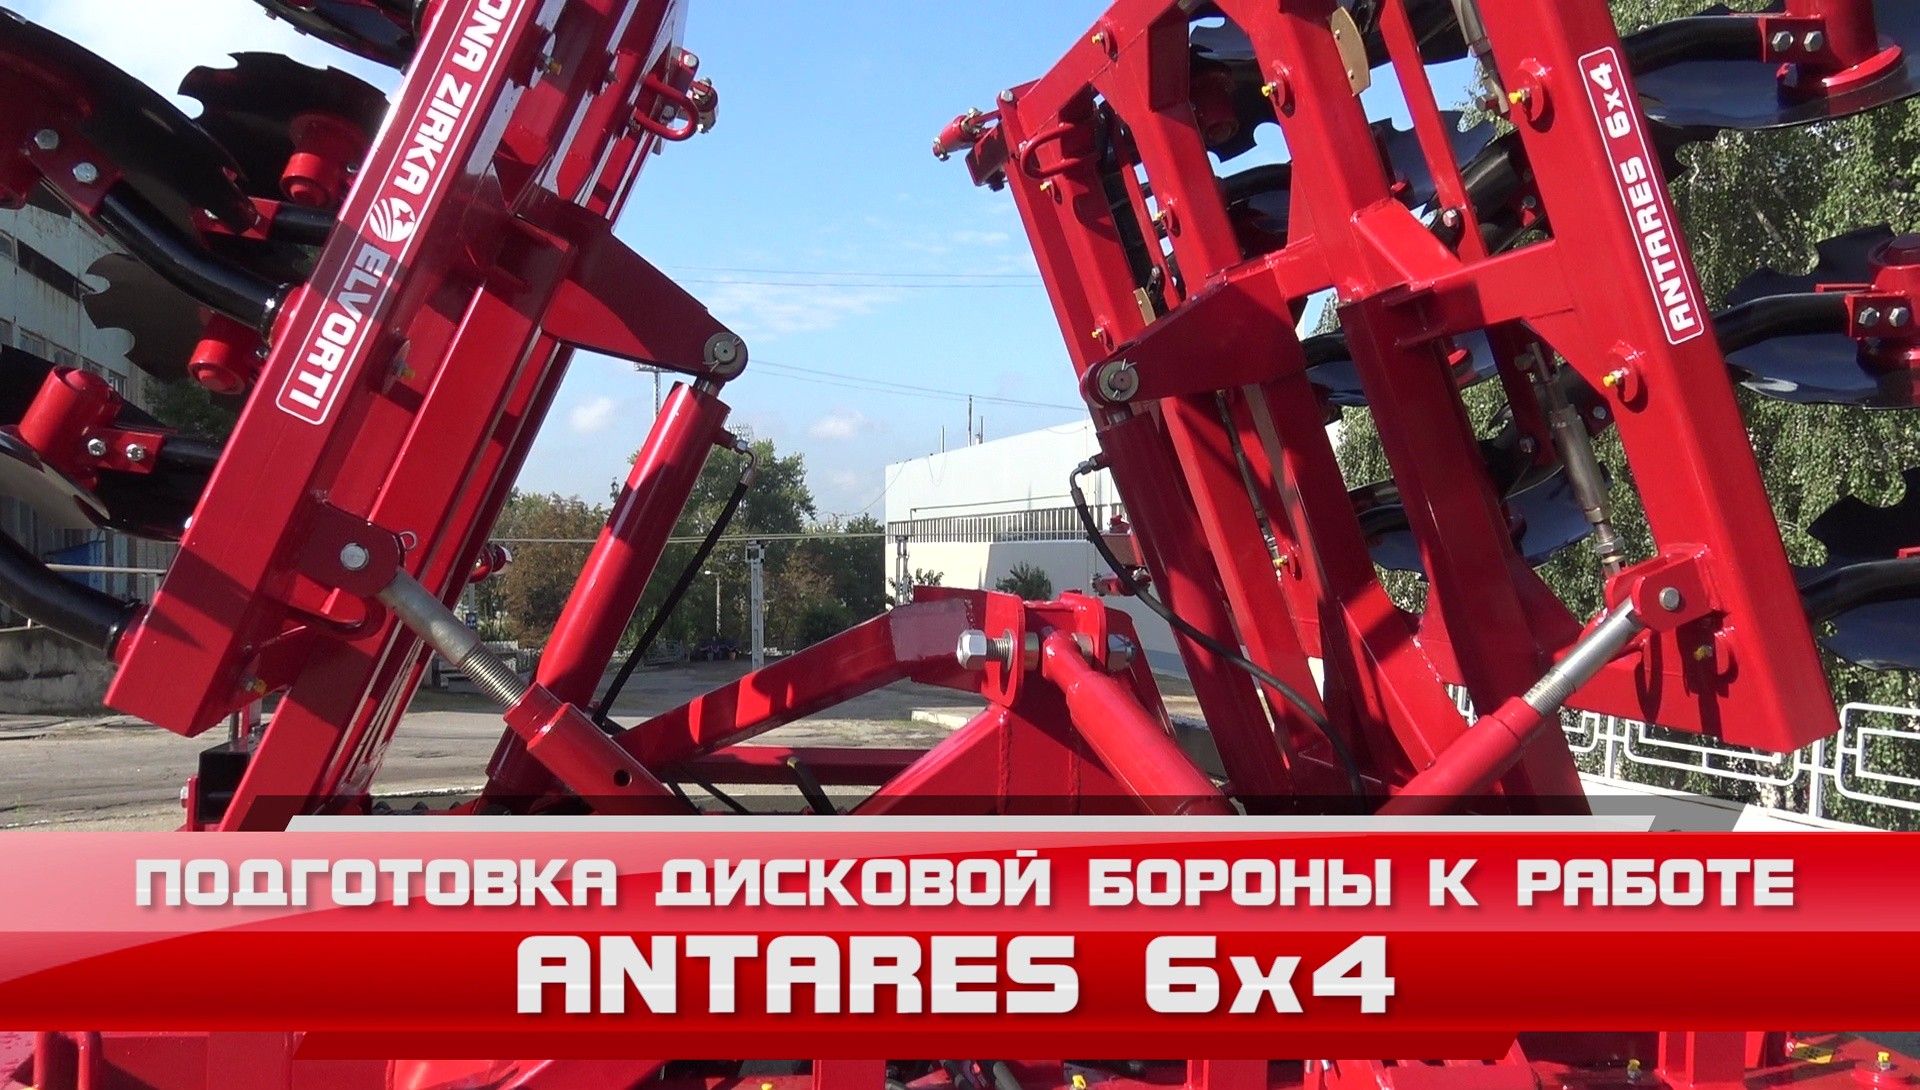 Antares 6x4 - Основные настройки и подготовка к работе